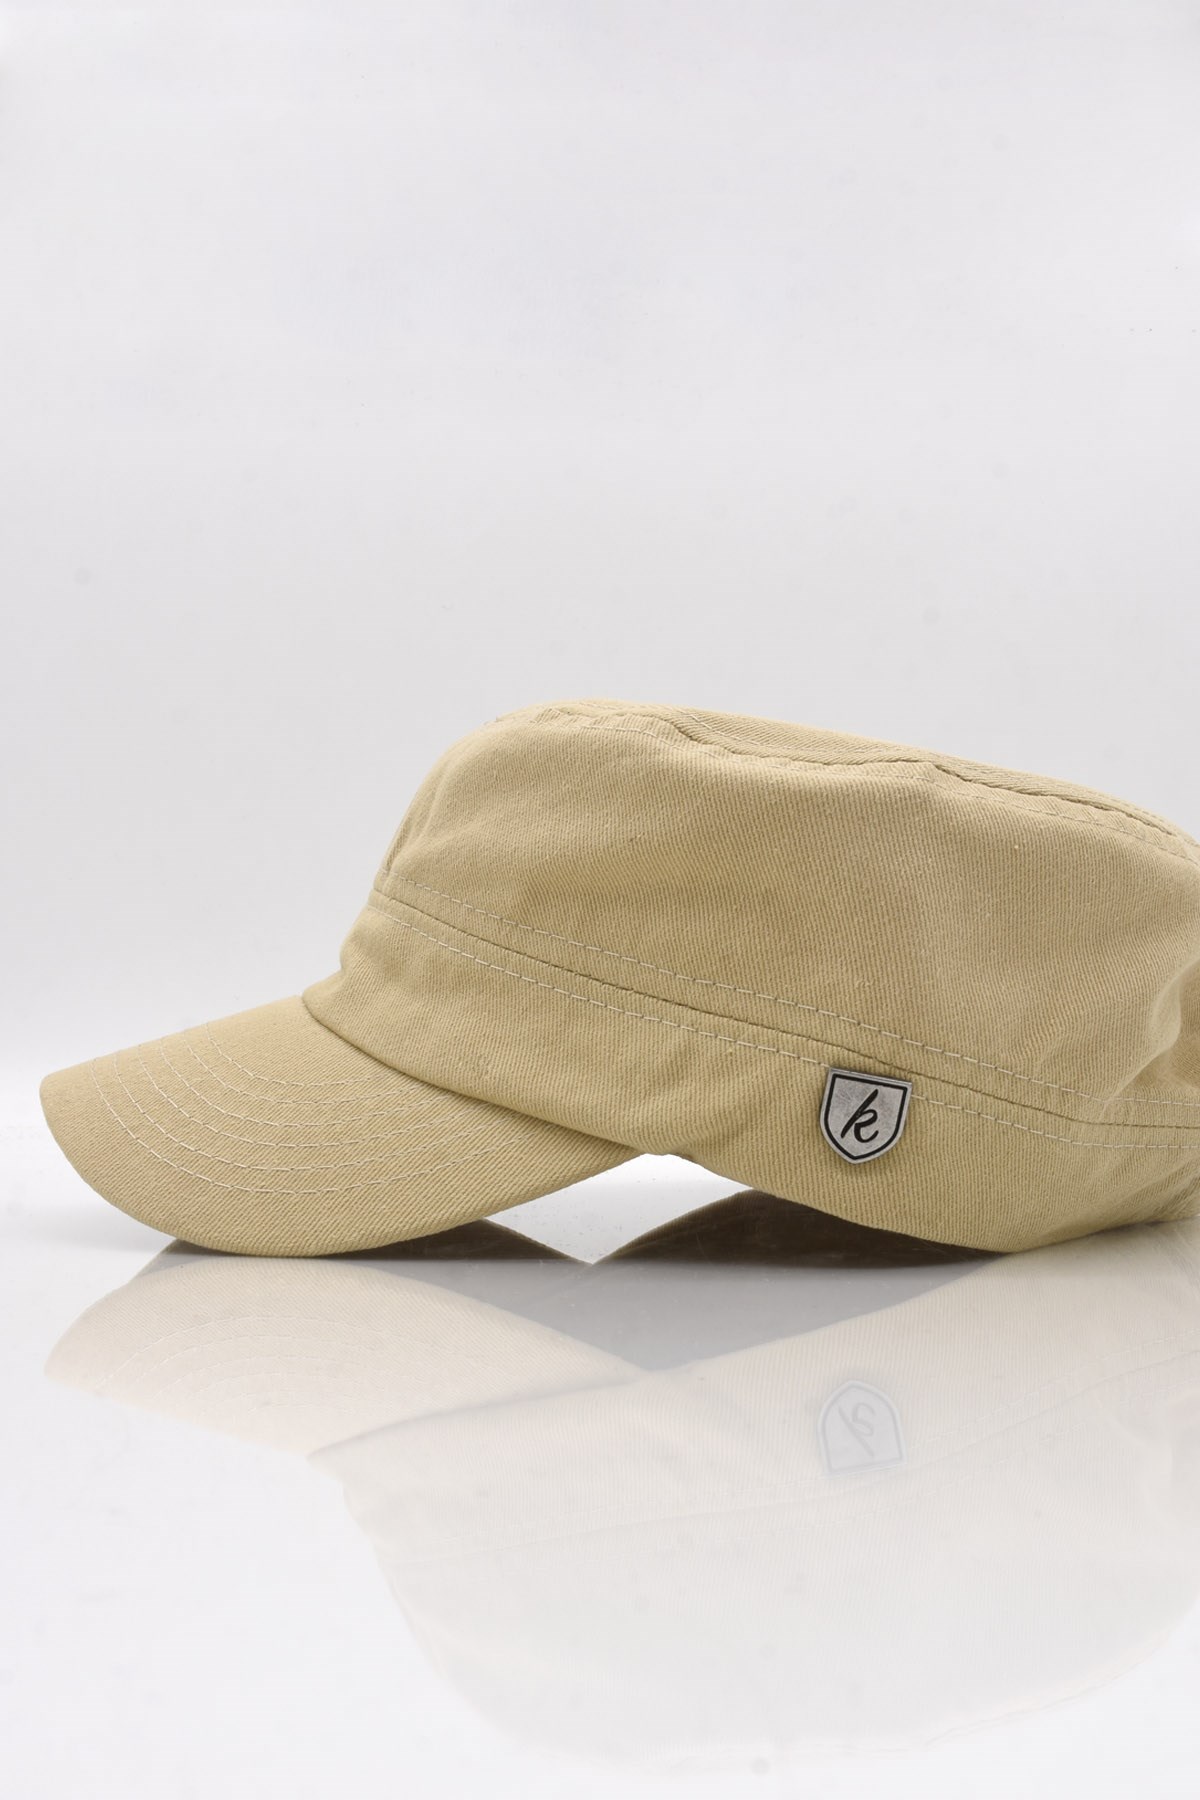 Külah Erkek Pamuklu Fidel Castro Şapka Koyu Bej Ayarlanabilir Outdoor Cap  KLH7145